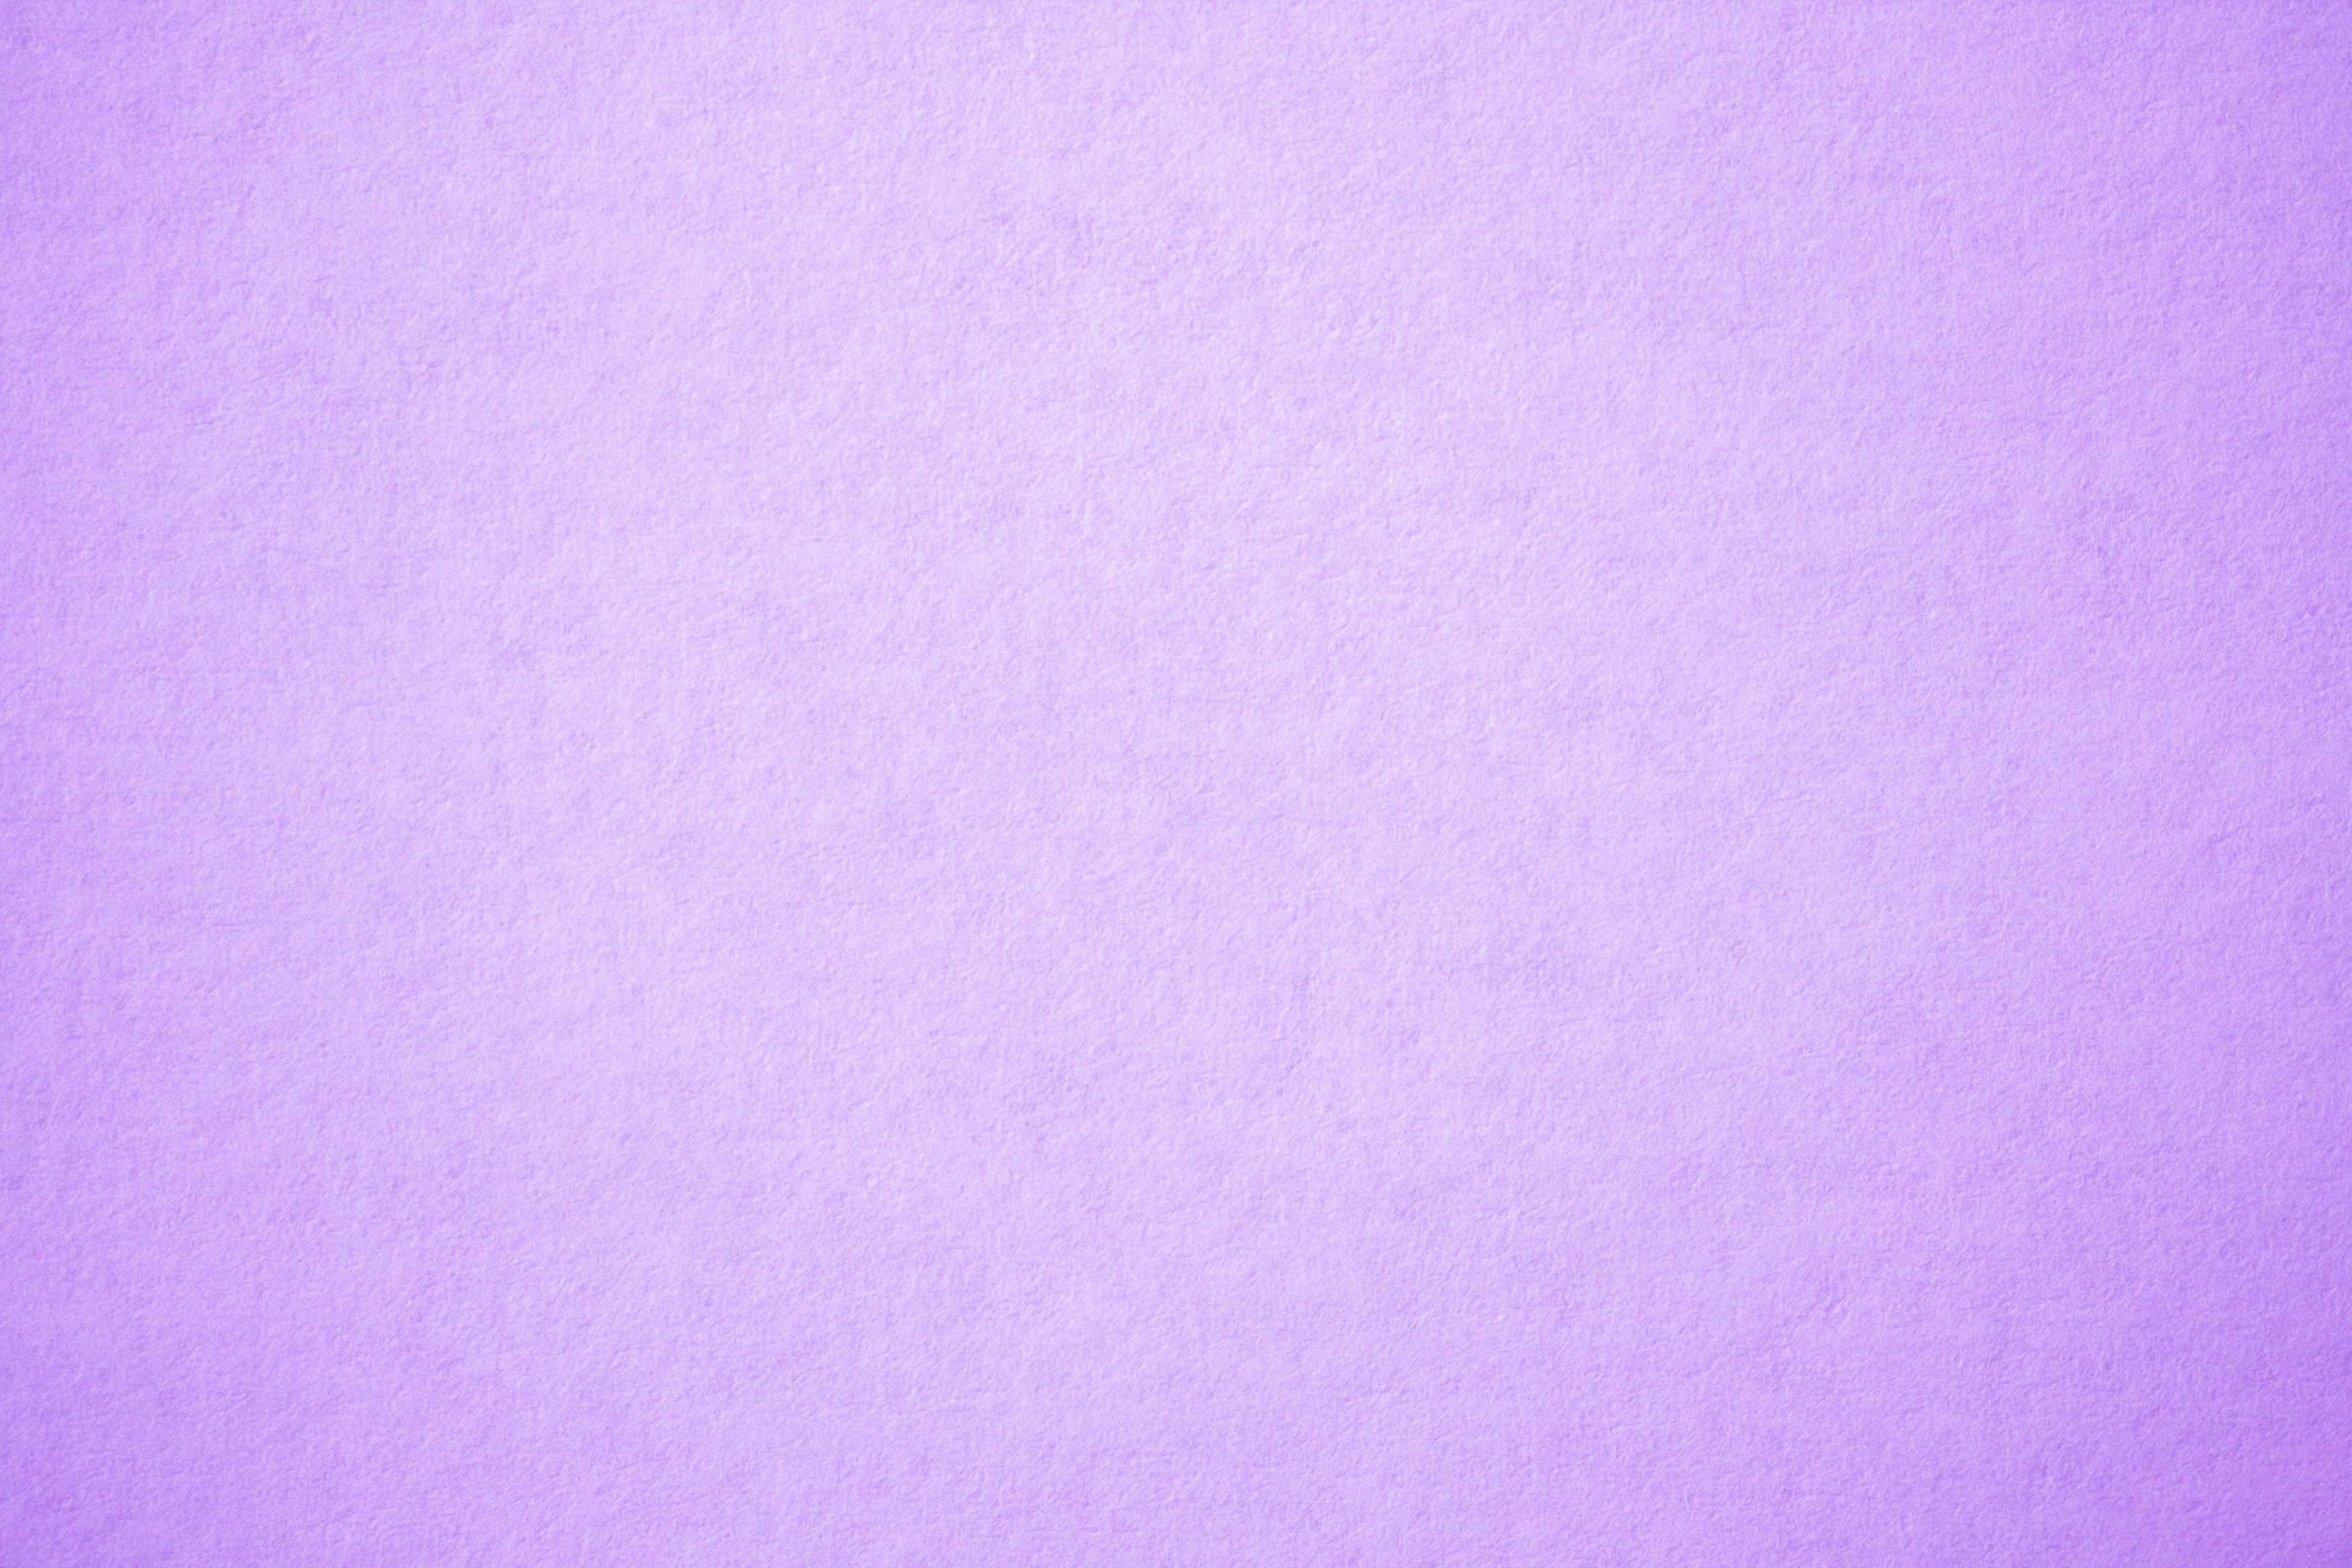 Chia sẻ với hơn 56 về background hình nền màu tím pastel hay nhất   coedocomvn